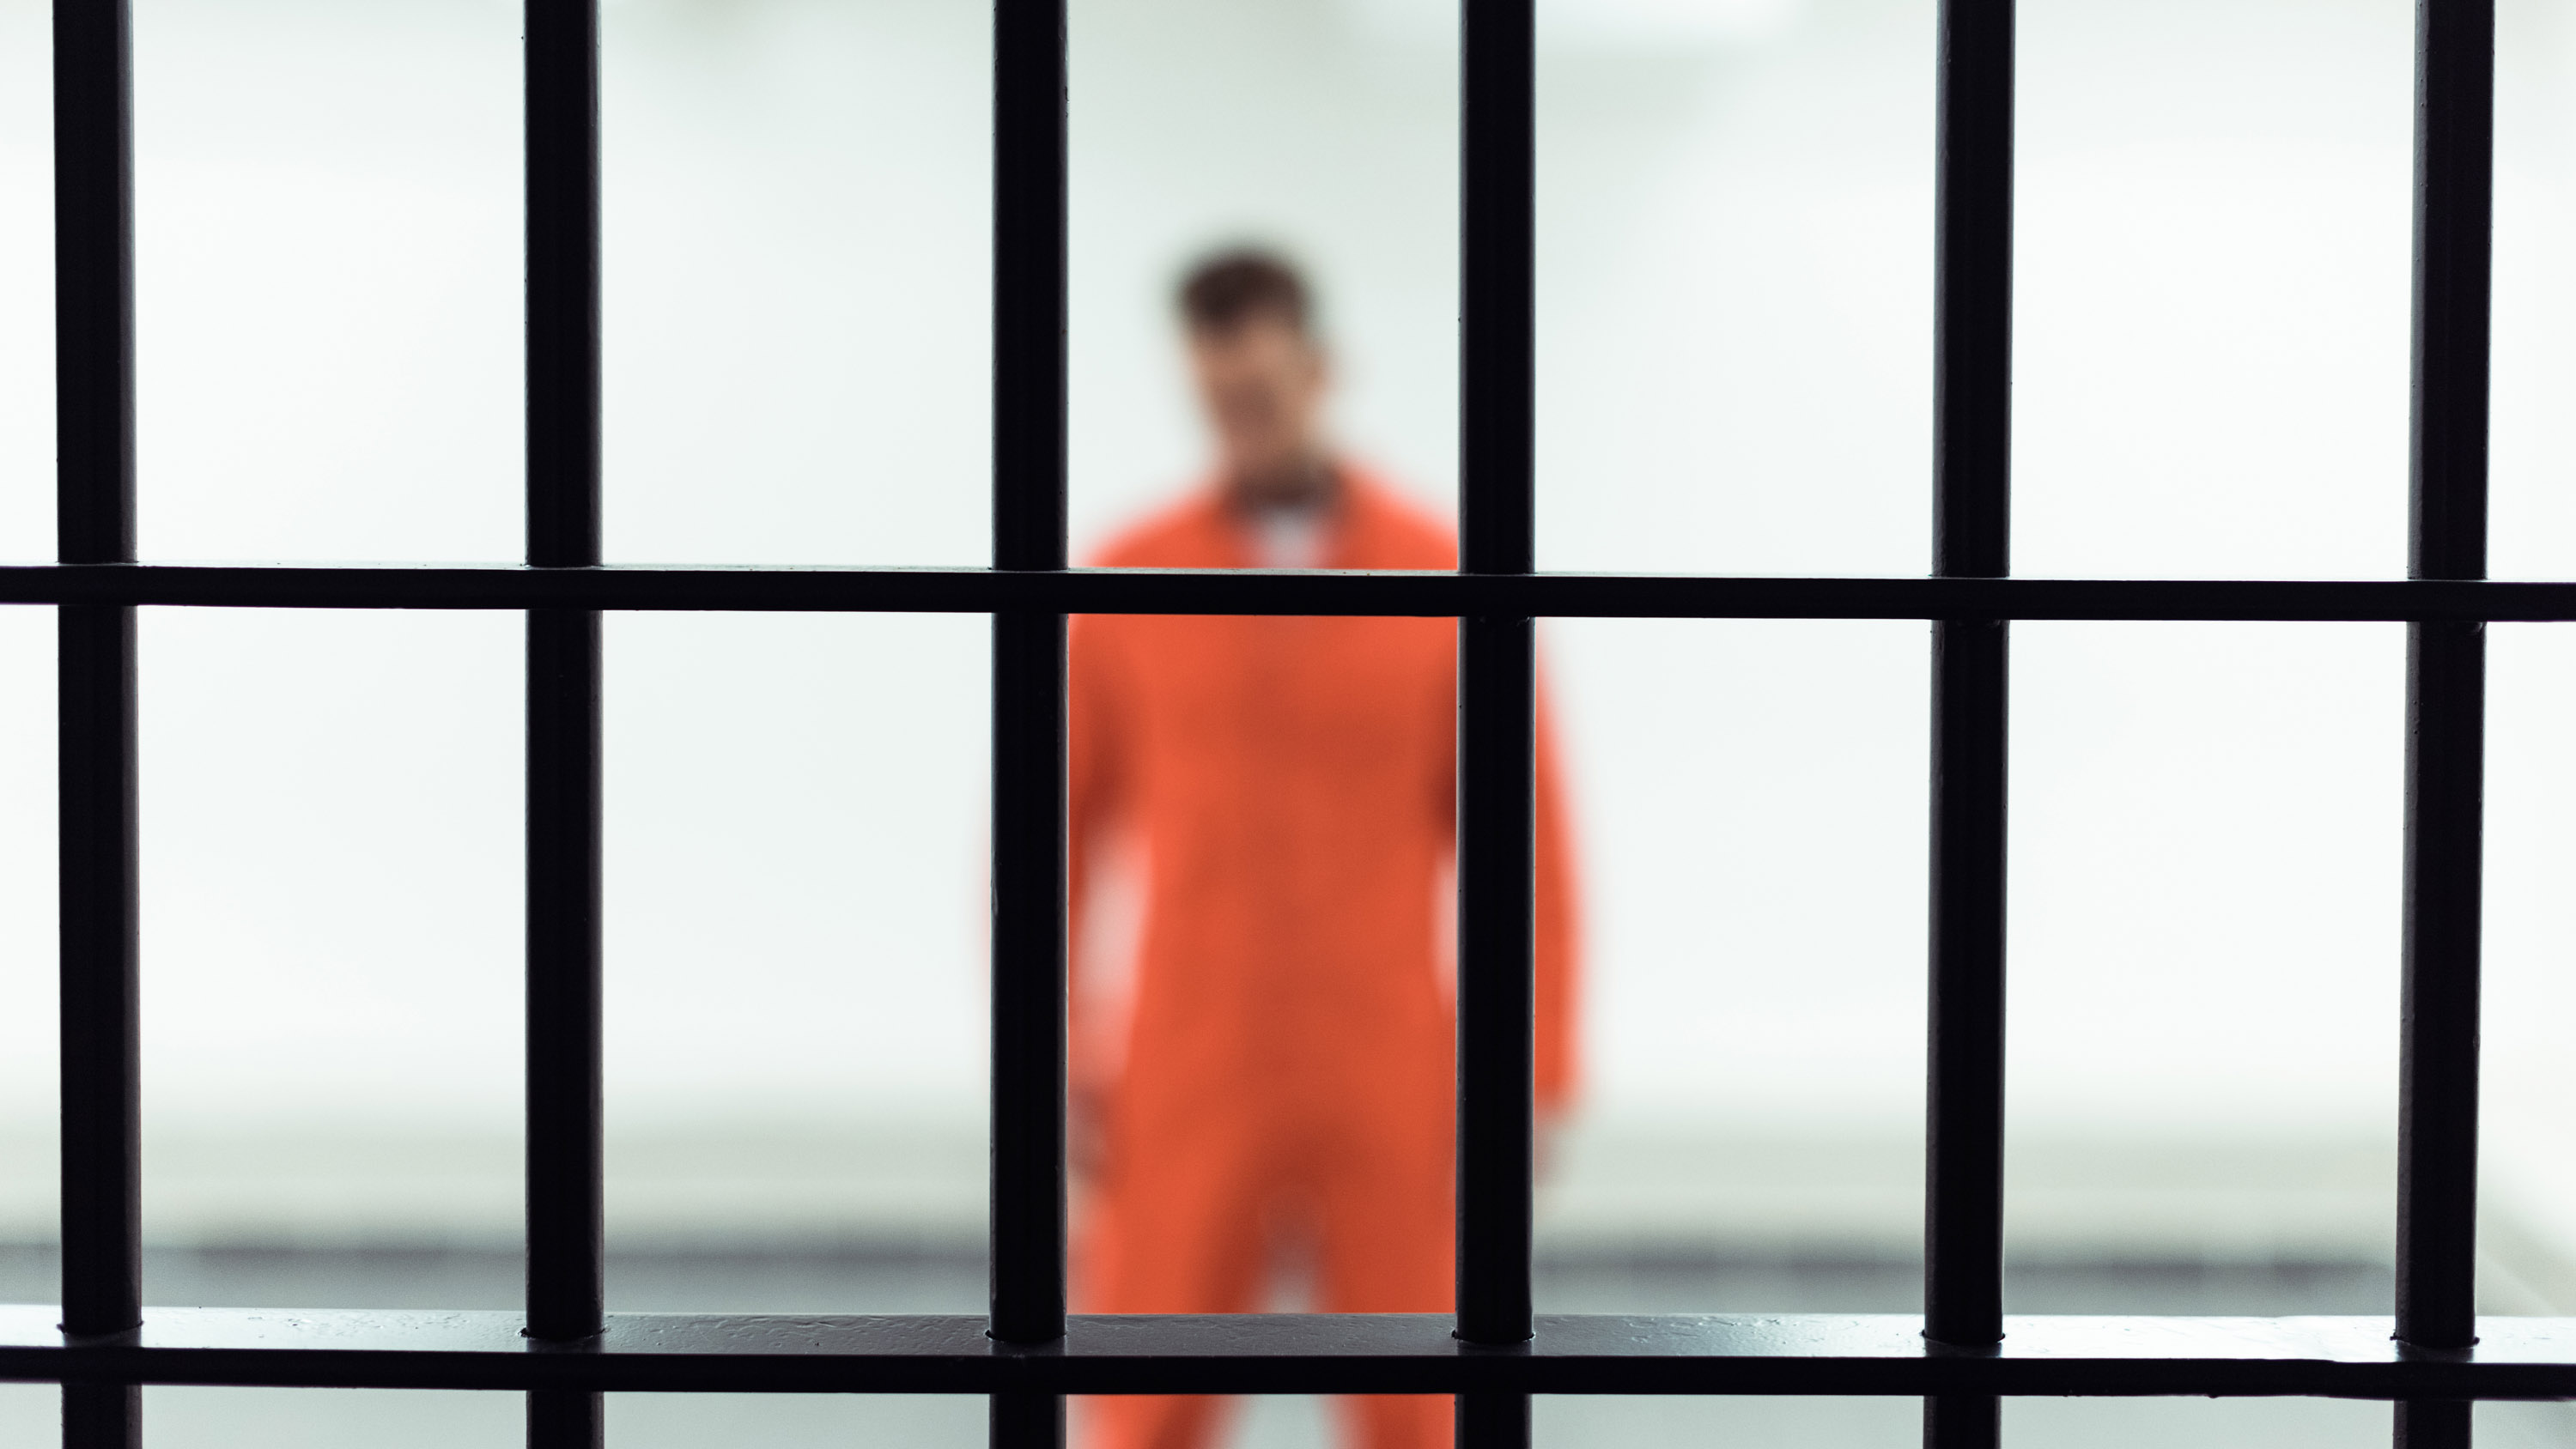 man in orange prison jumpsuit out of focus behind metal bars